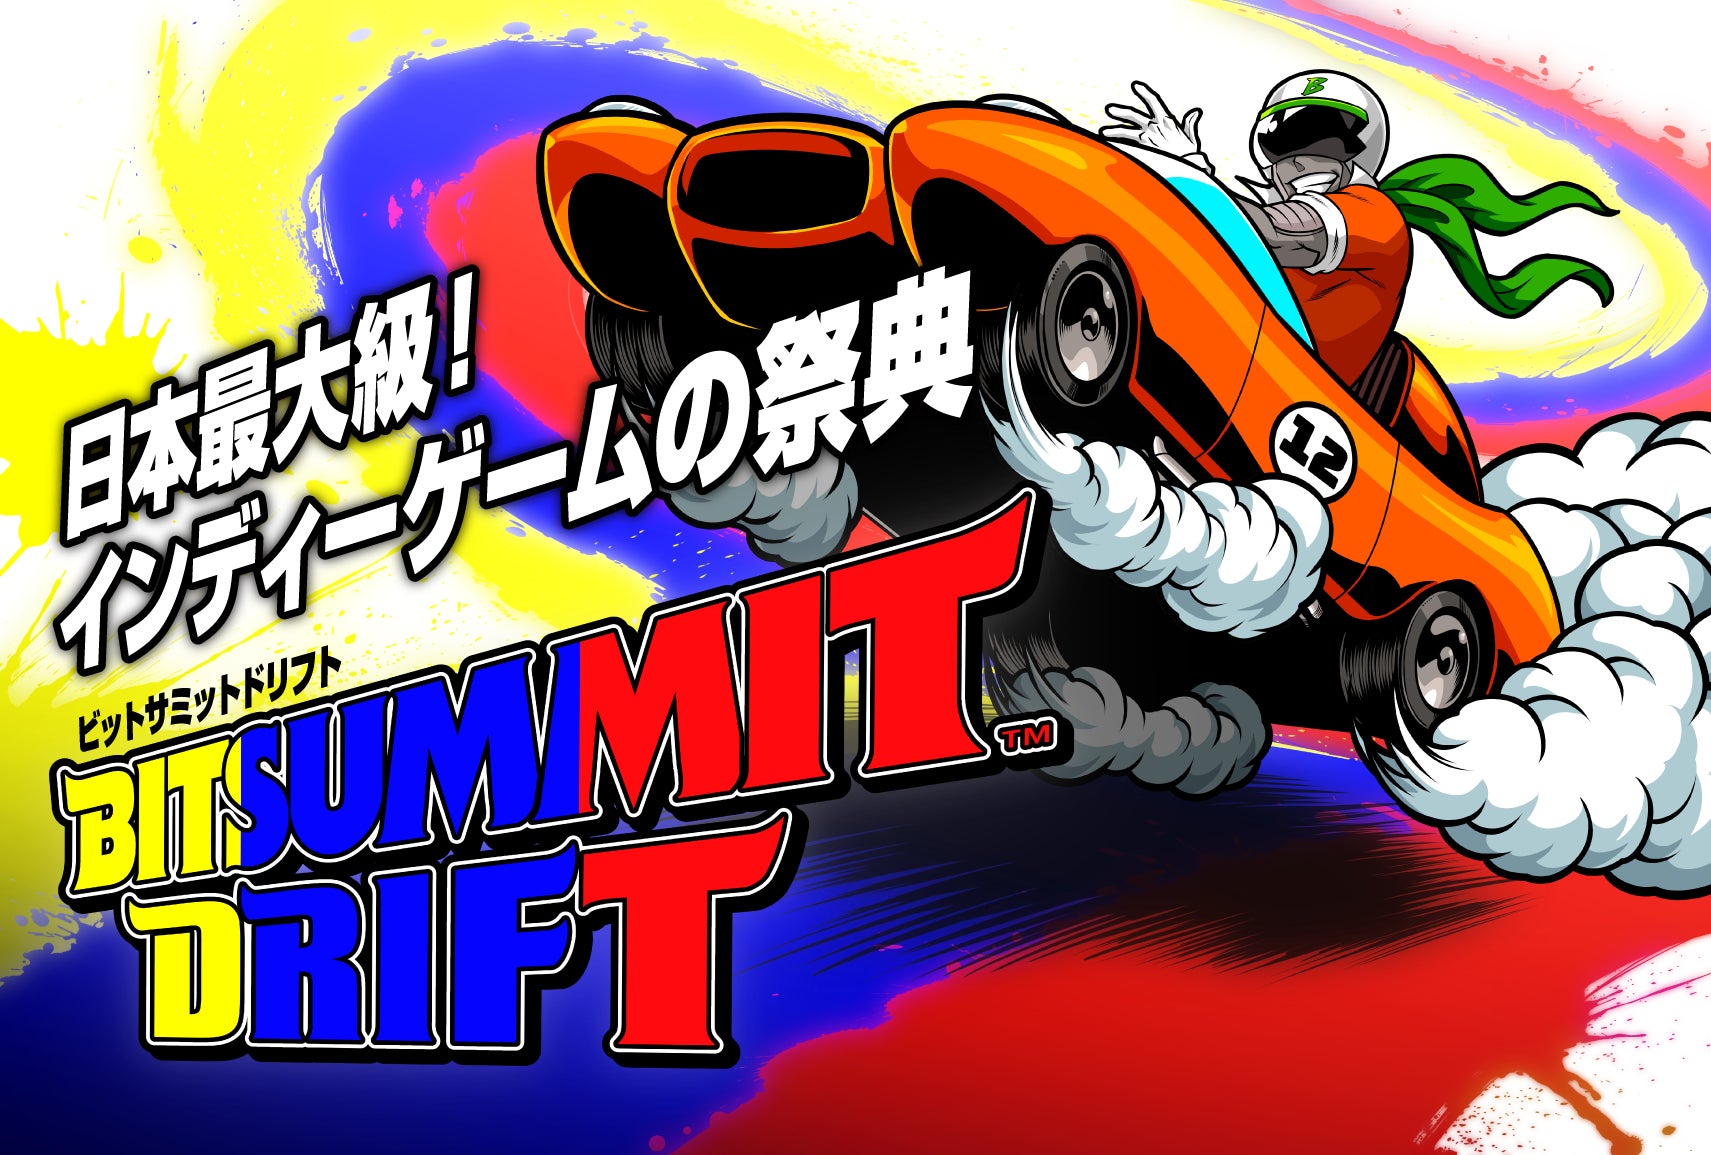 京都にて開催される国内最大級のインディーゲームイベント「BitSummit Drift」 ステージイベント第一弾 公開のお知らせ